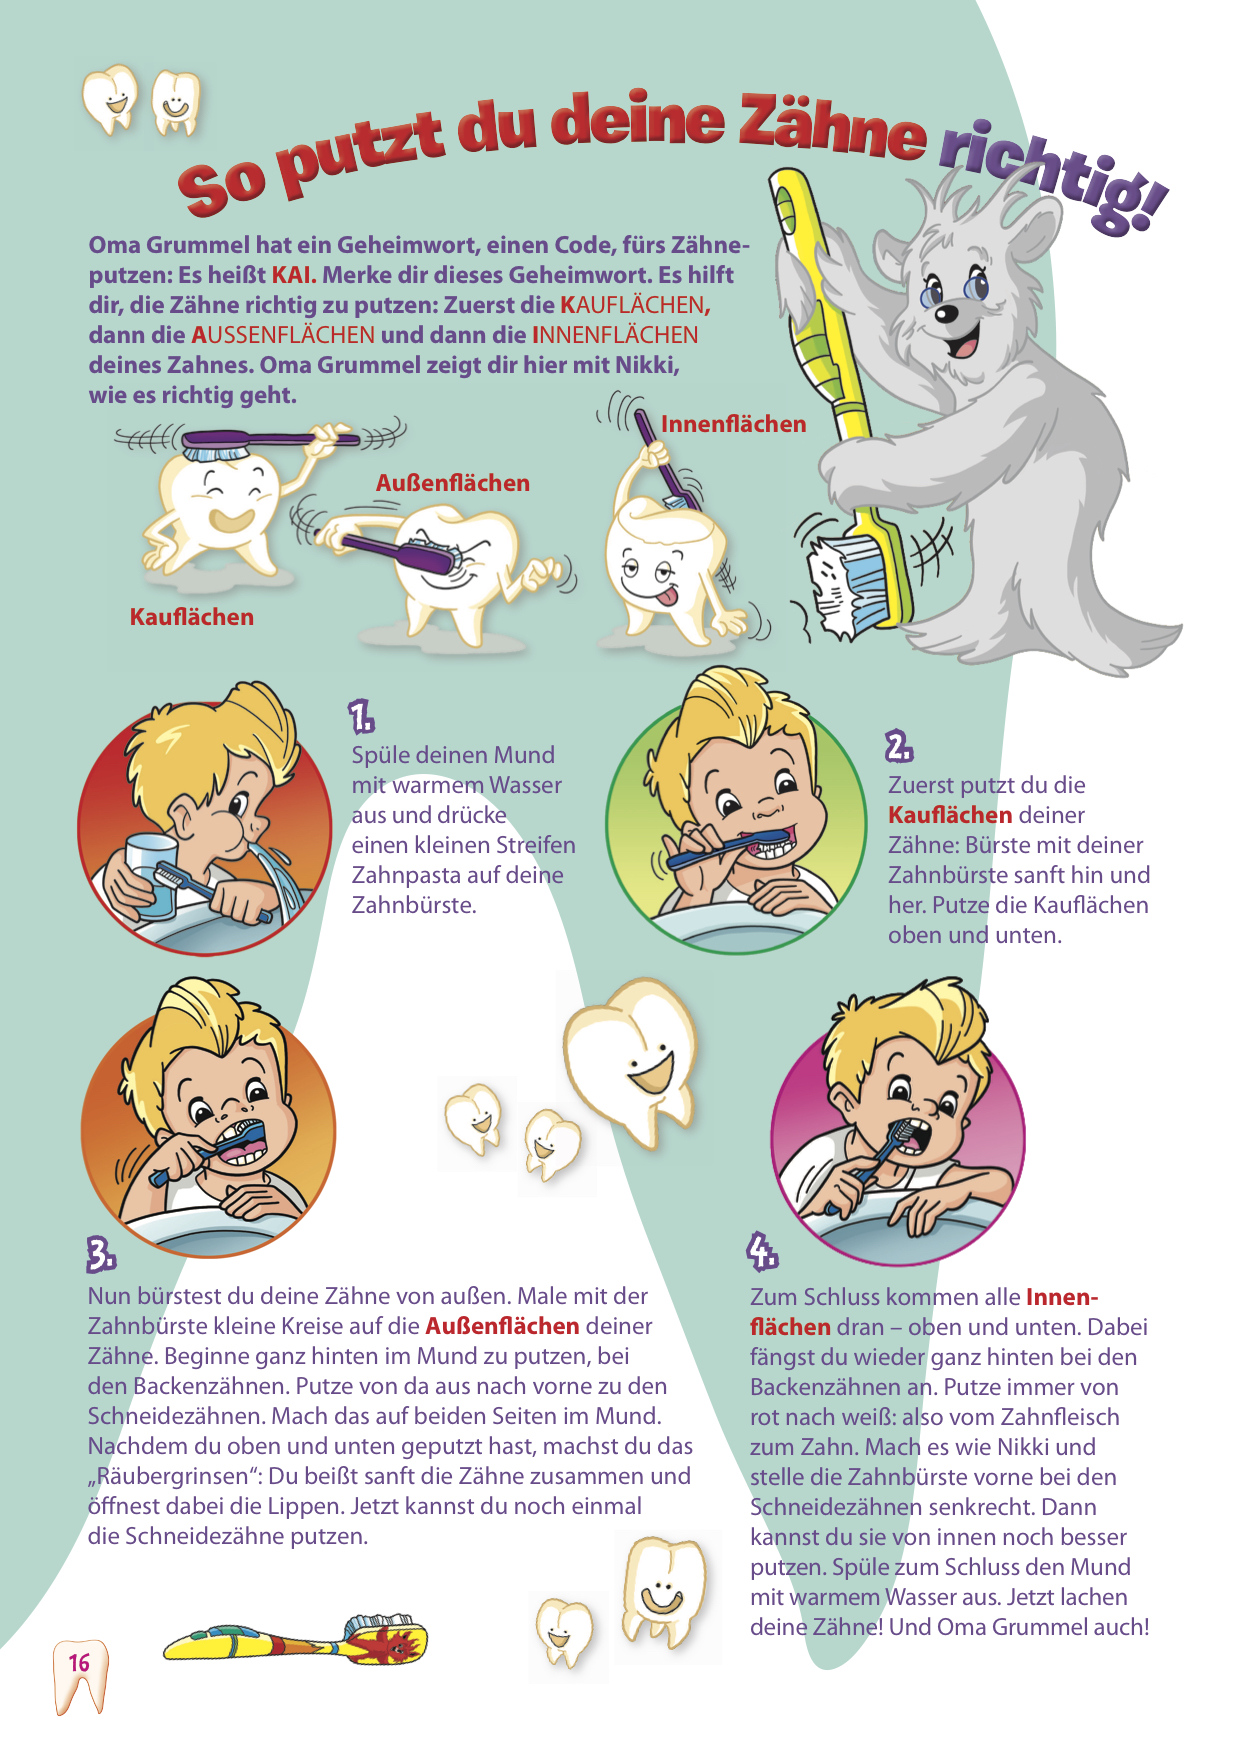 Saubere Zähne mit der KAI-Methode